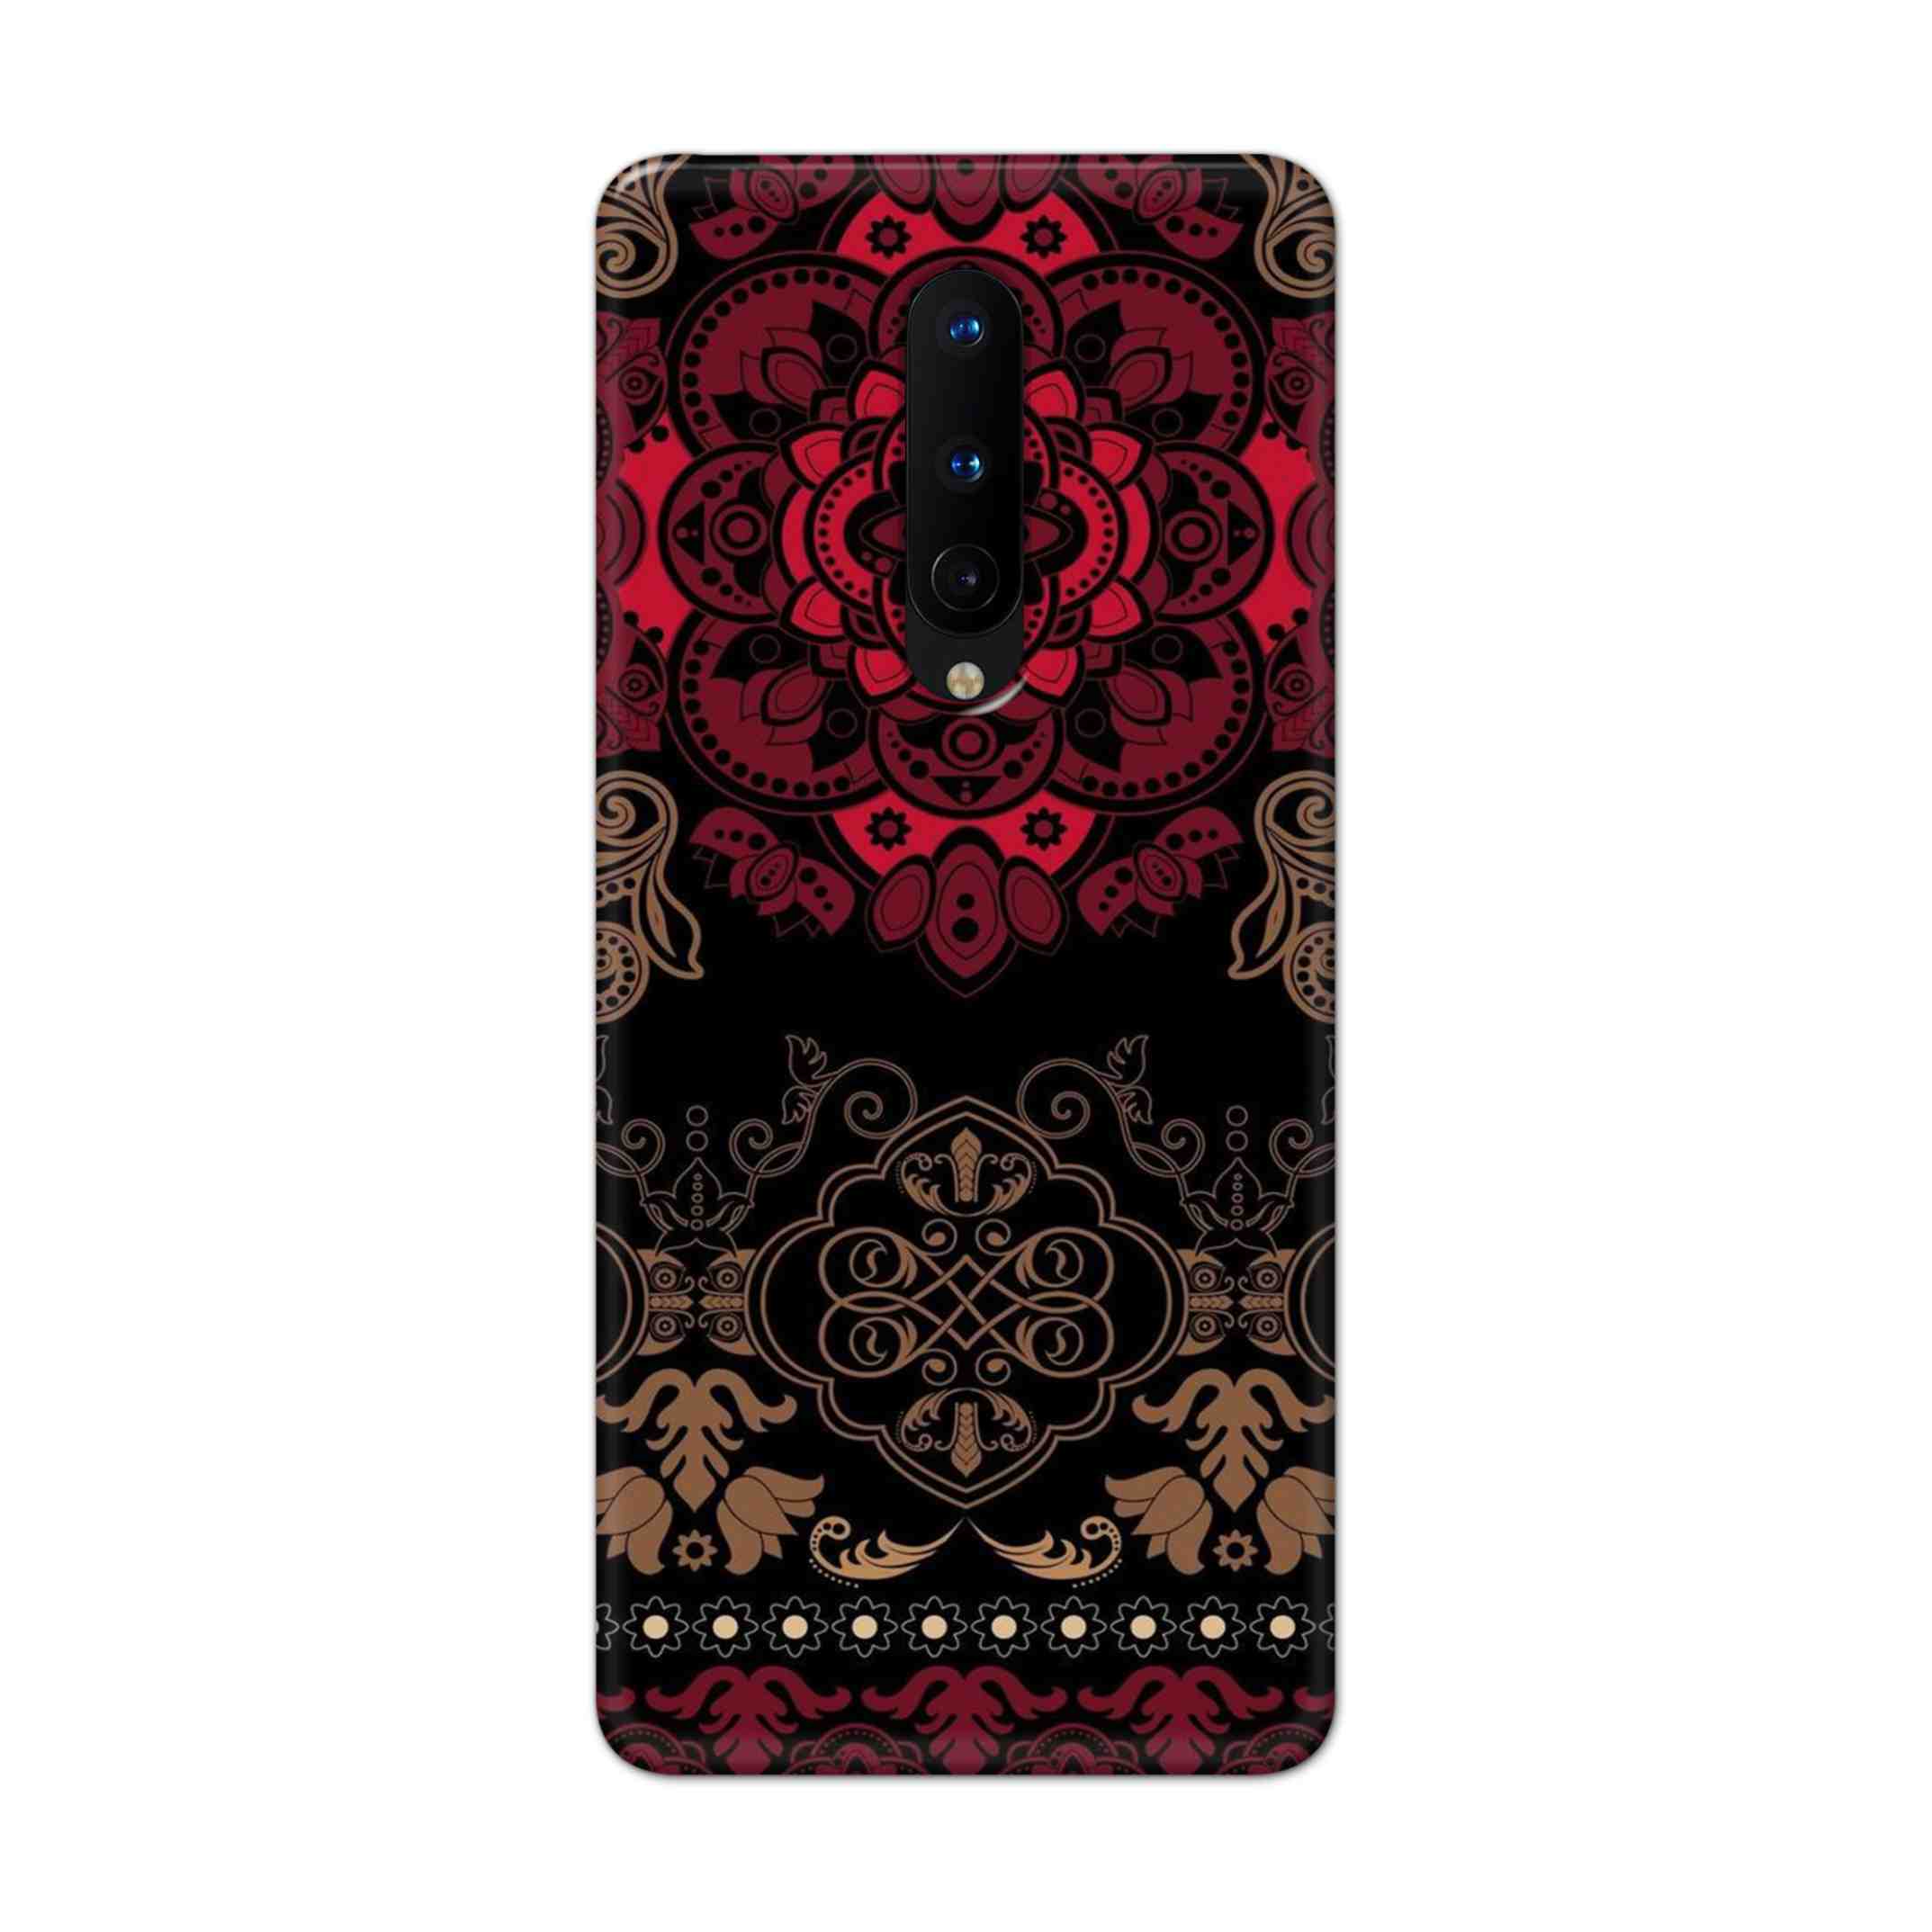 Buy Christian Mandalas Hard Back Mobile Phone Case Cover For OnePlus 8 Online